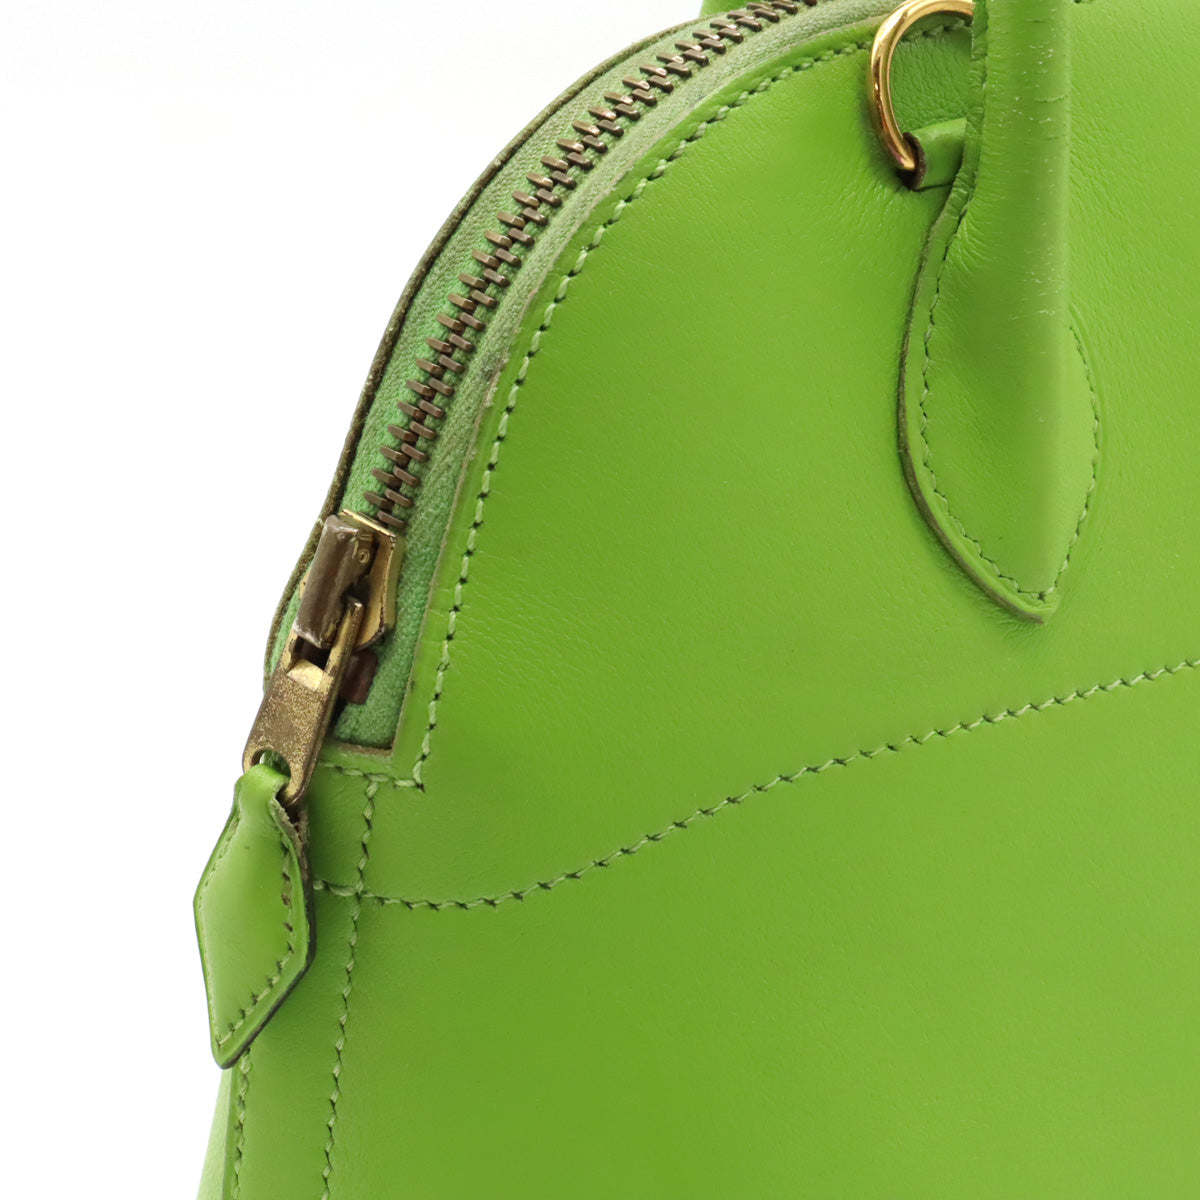 Hermes Bolide 27 Handbag 2WAY Shoulder Bag Leather Green Gold  V Signage Blumin